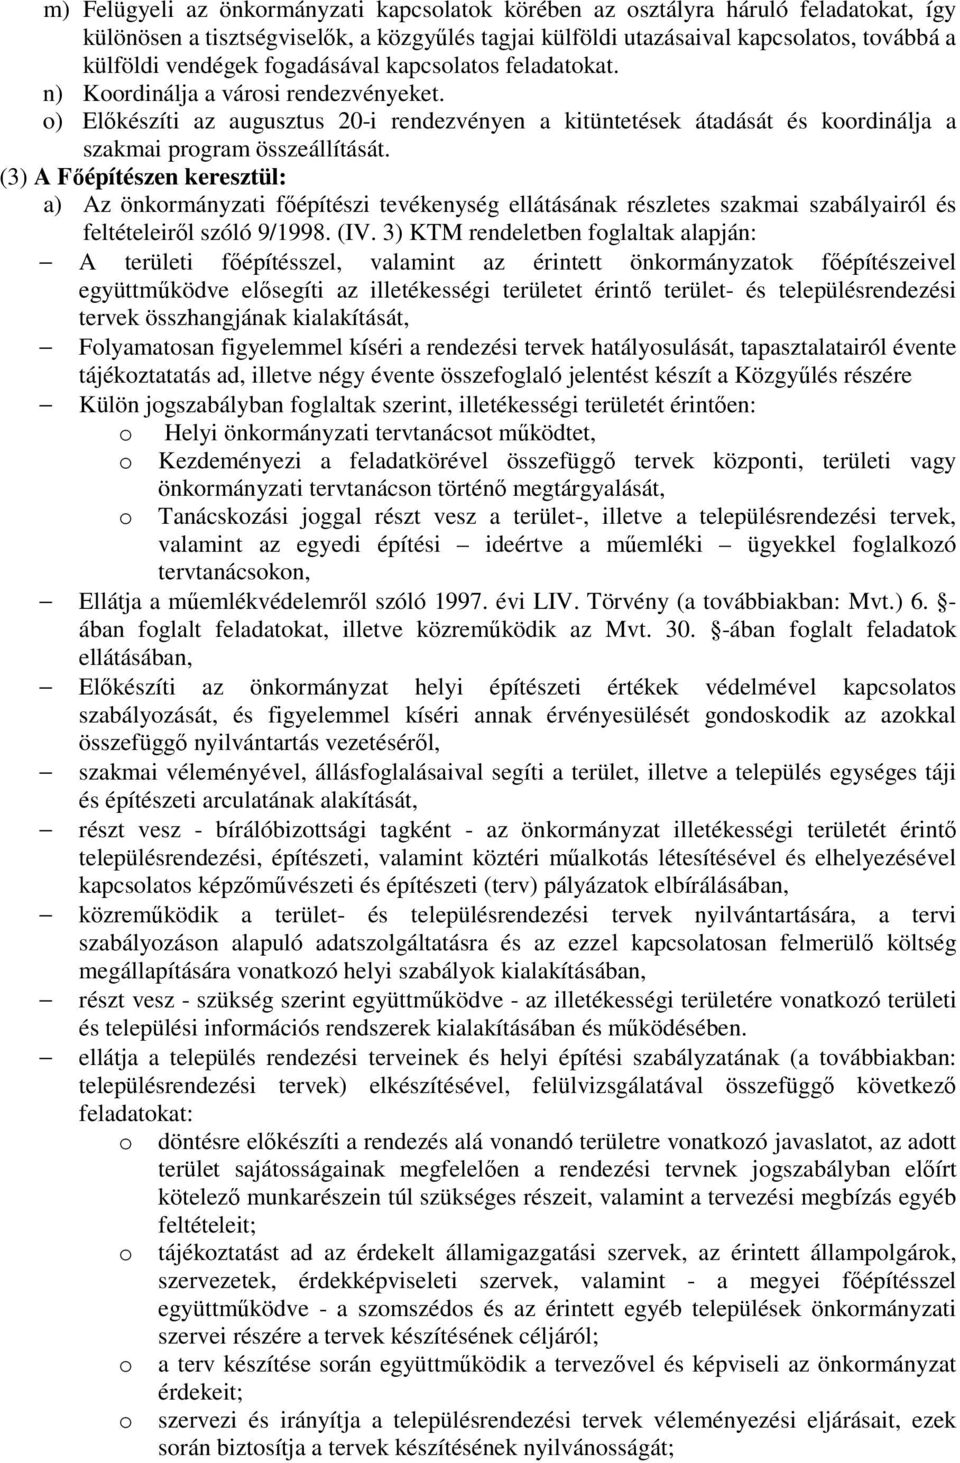 (3) A Fıépítészen keresztül: a) Az önkormányzati fıépítészi tevékenység ellátásának részletes szakmai szabályairól és feltételeirıl szóló 9/1998. (IV.